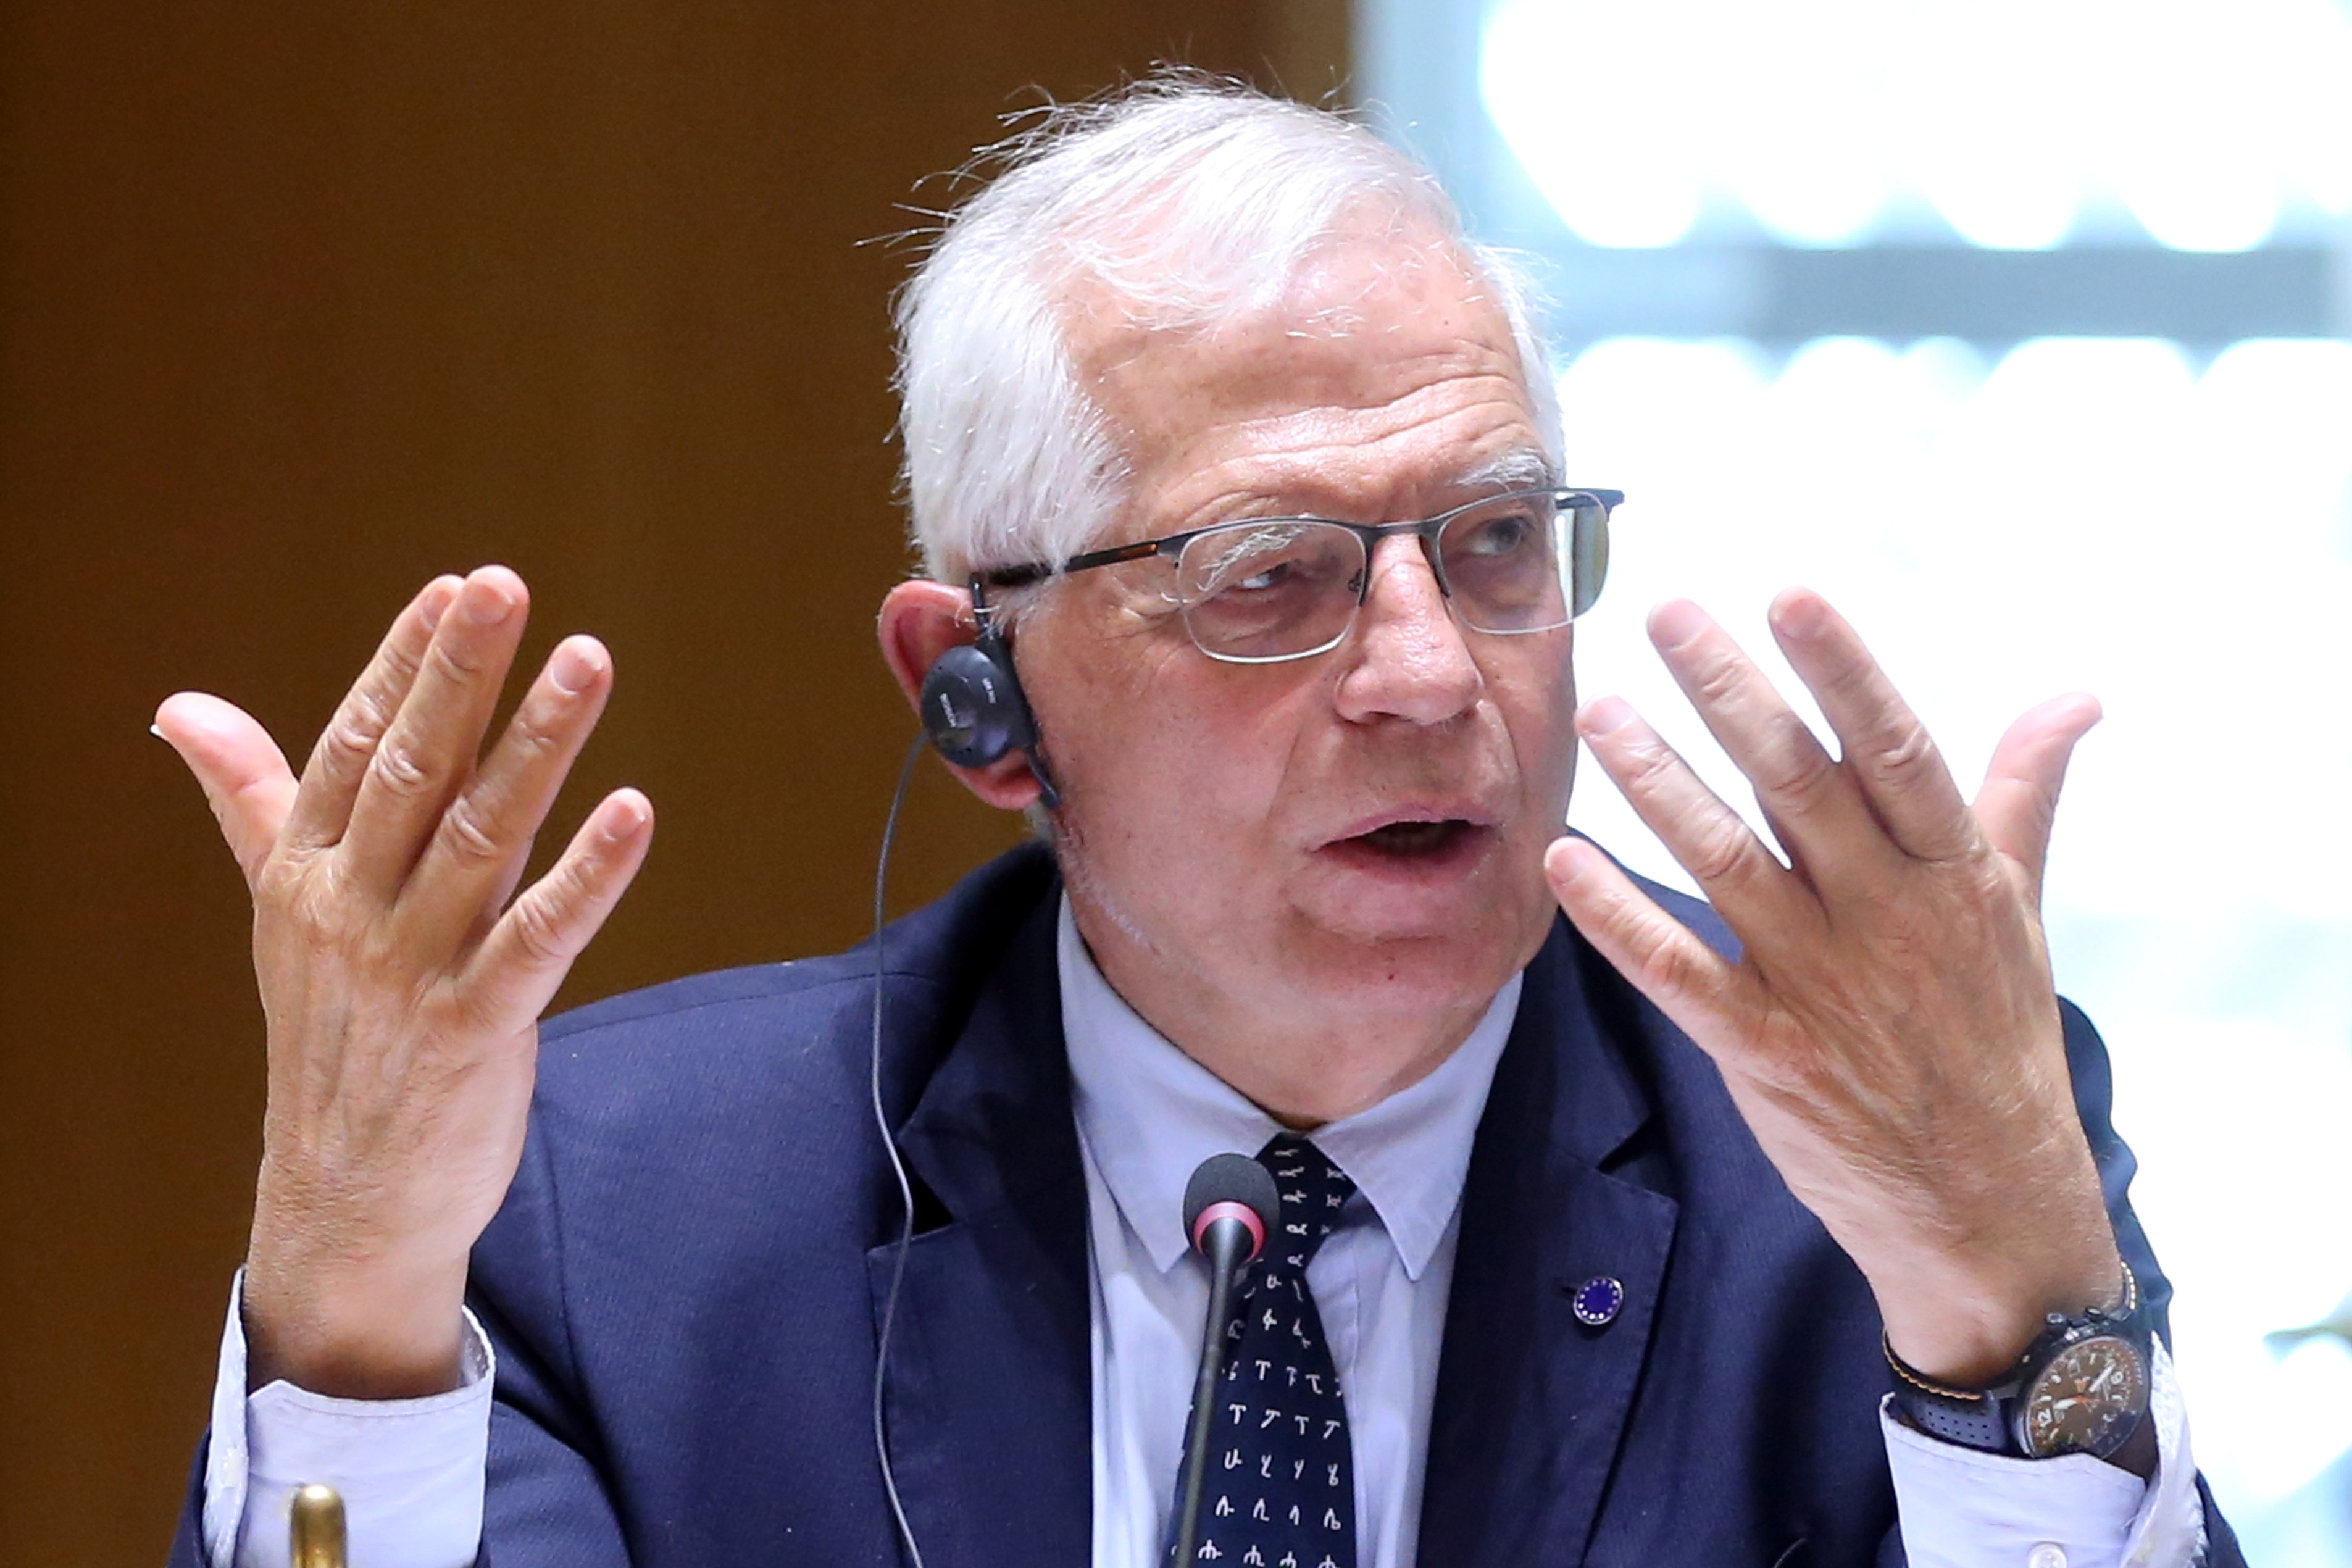 Josep Borrell, alto representante para la política exterior de la UE (Francois Walschaerts/Pool via REUTERS)